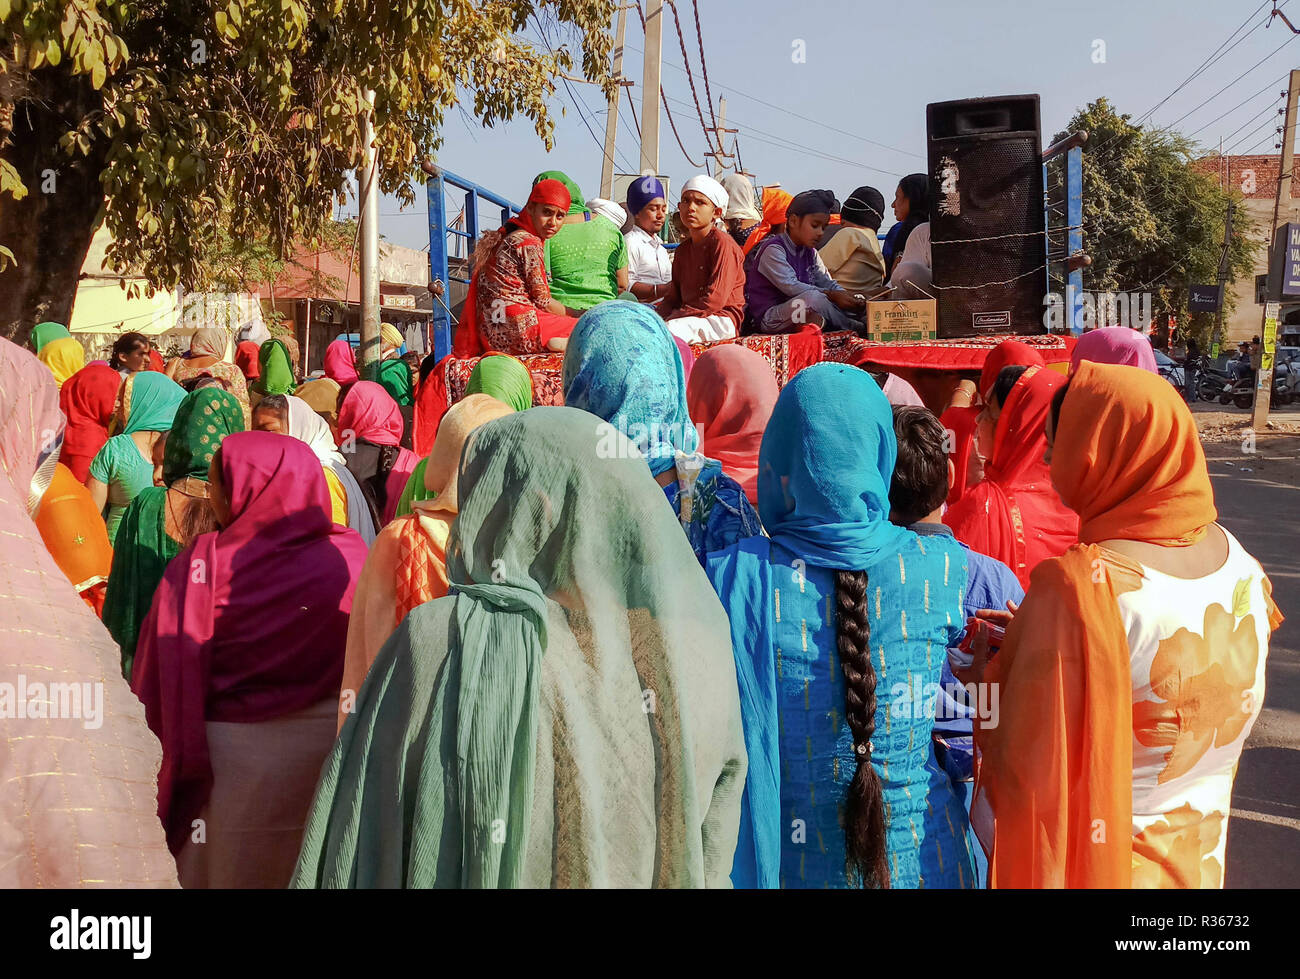 Les dévots sikhs indiens sont vus au cours de la participante Nagar Keertan (Procession sainte) à Chandigarh. Une procession religieuse a eu lieu dans la région de l'anniversaire de la naissance de Guru Nanak Dev, le fondateur de la foi sikh, qui sera célébré dans tout le pays le 23 novembre. Banque D'Images